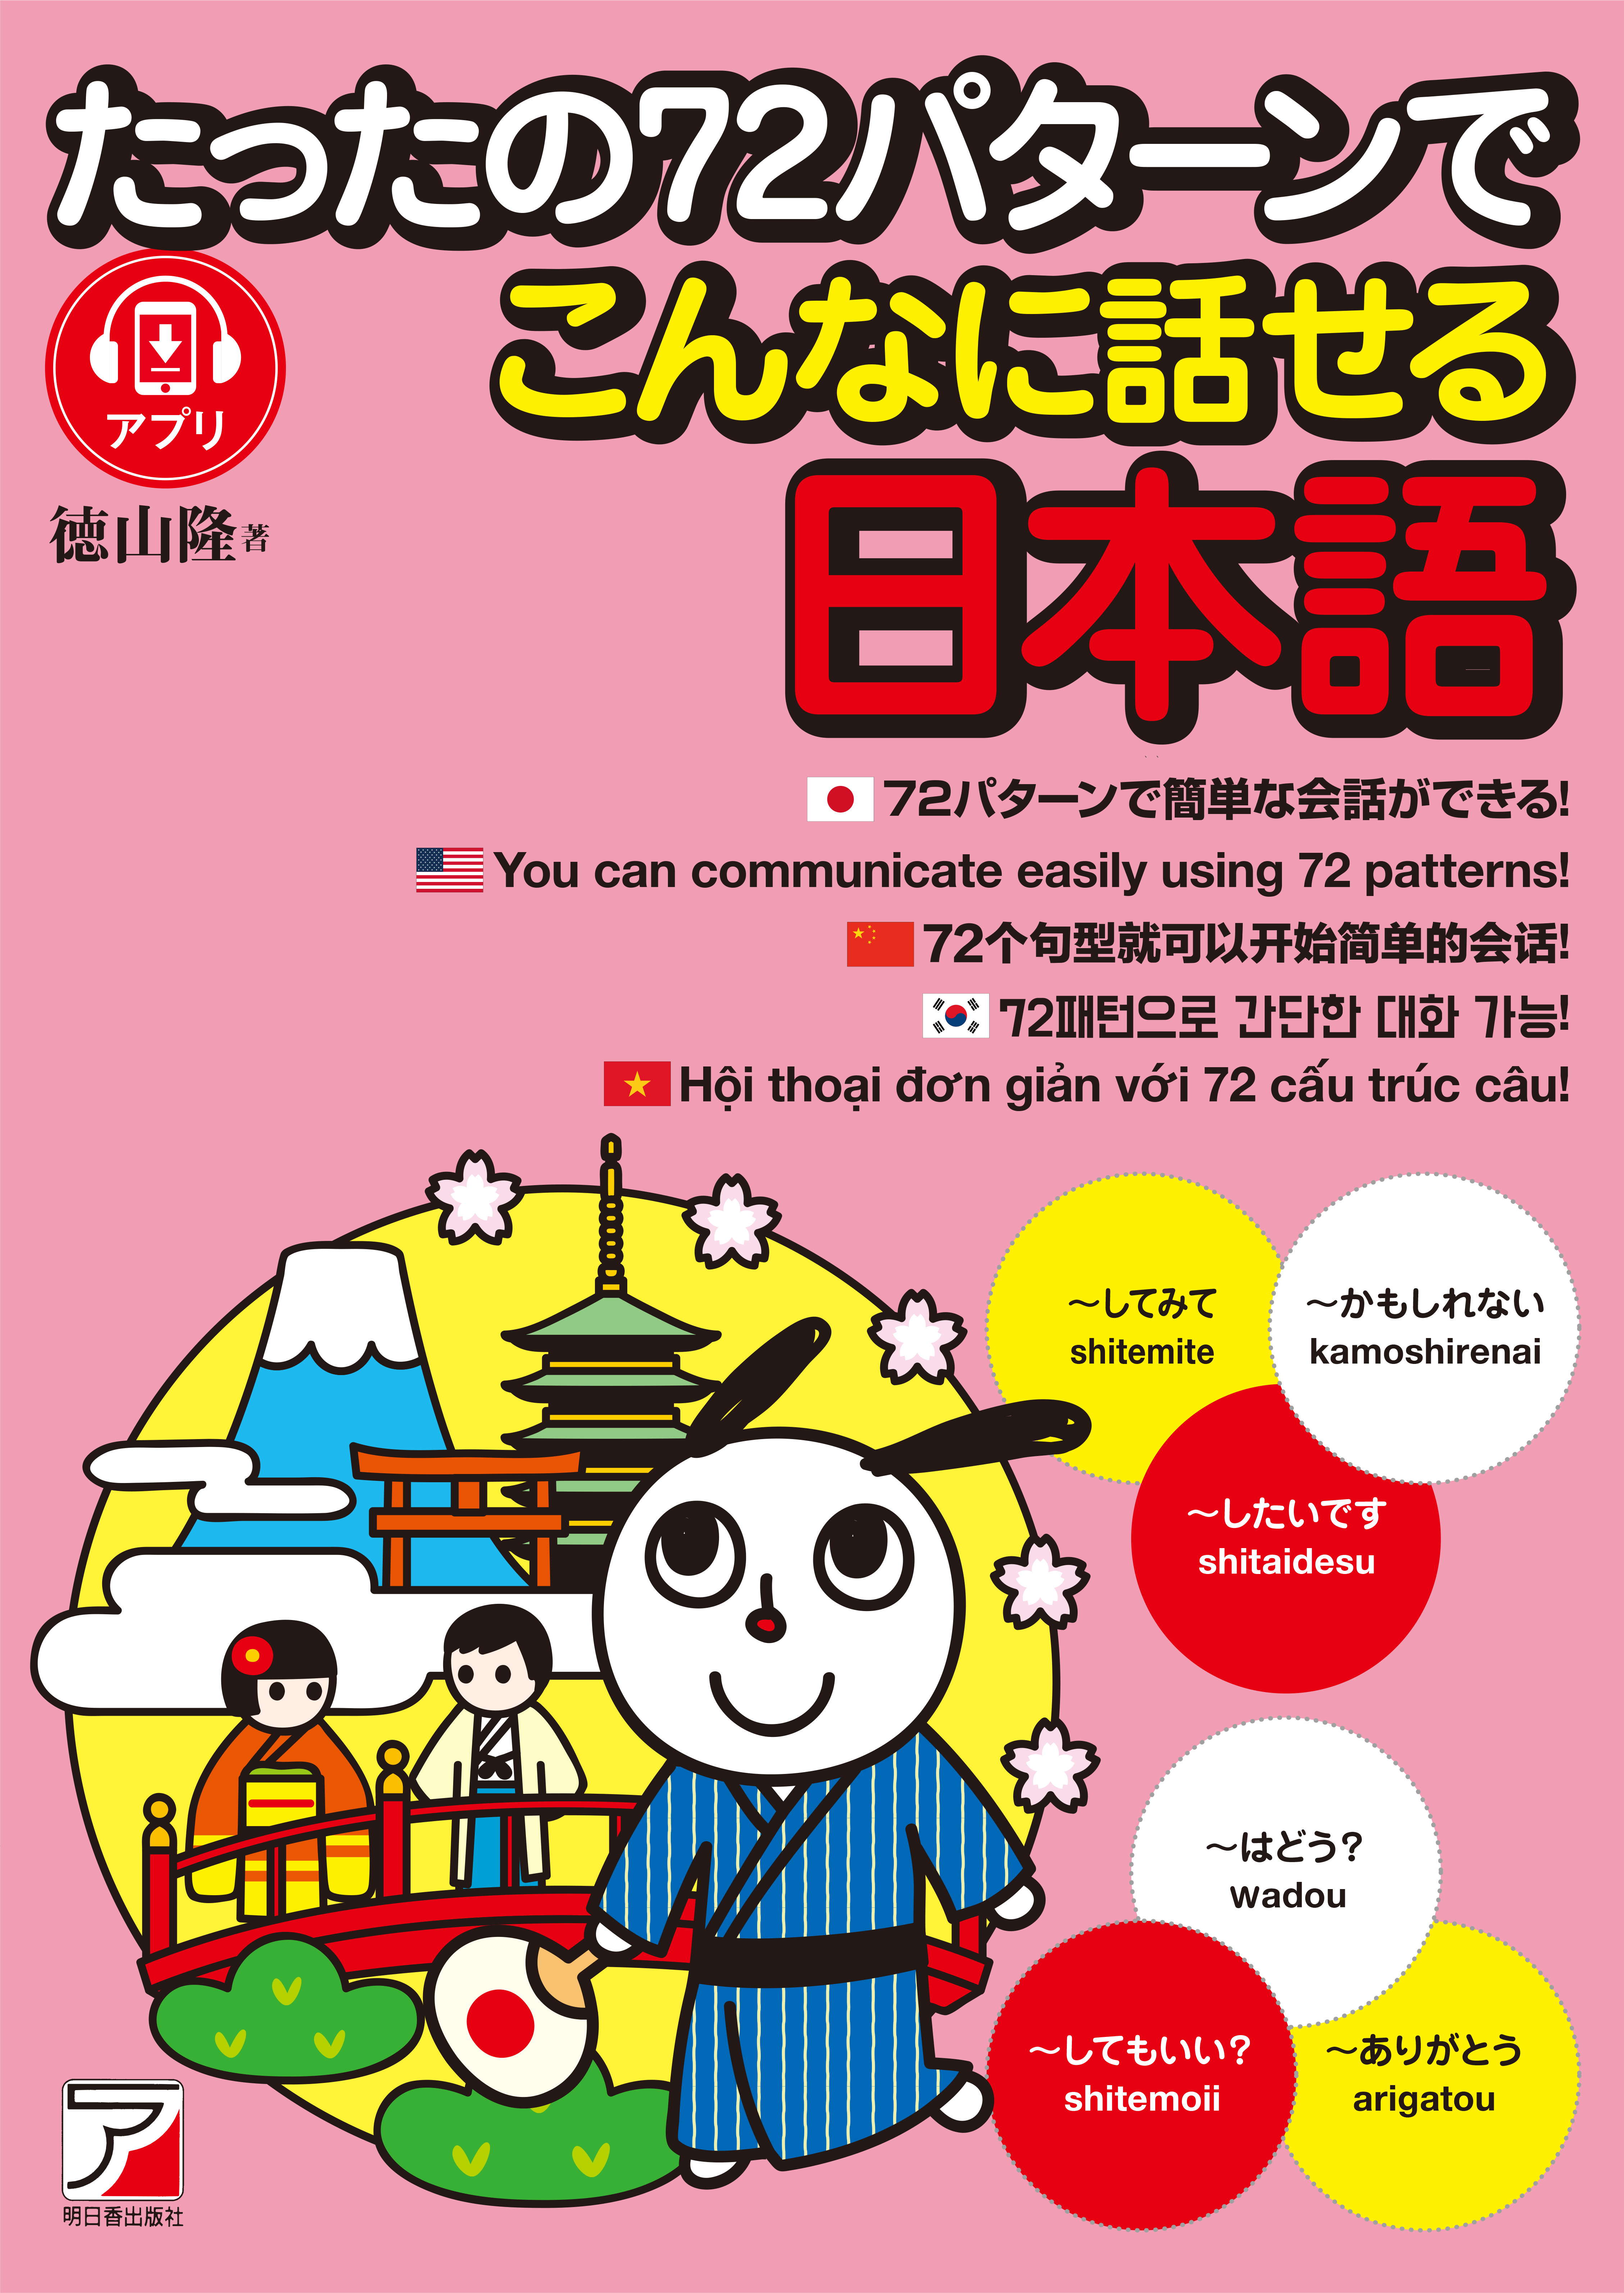 パターンを覚えれば日本語がわかる 使える たったの72パターンでこんなに話せる日本語 9月28日発売 有限会社明日香出版社のプレスリリース